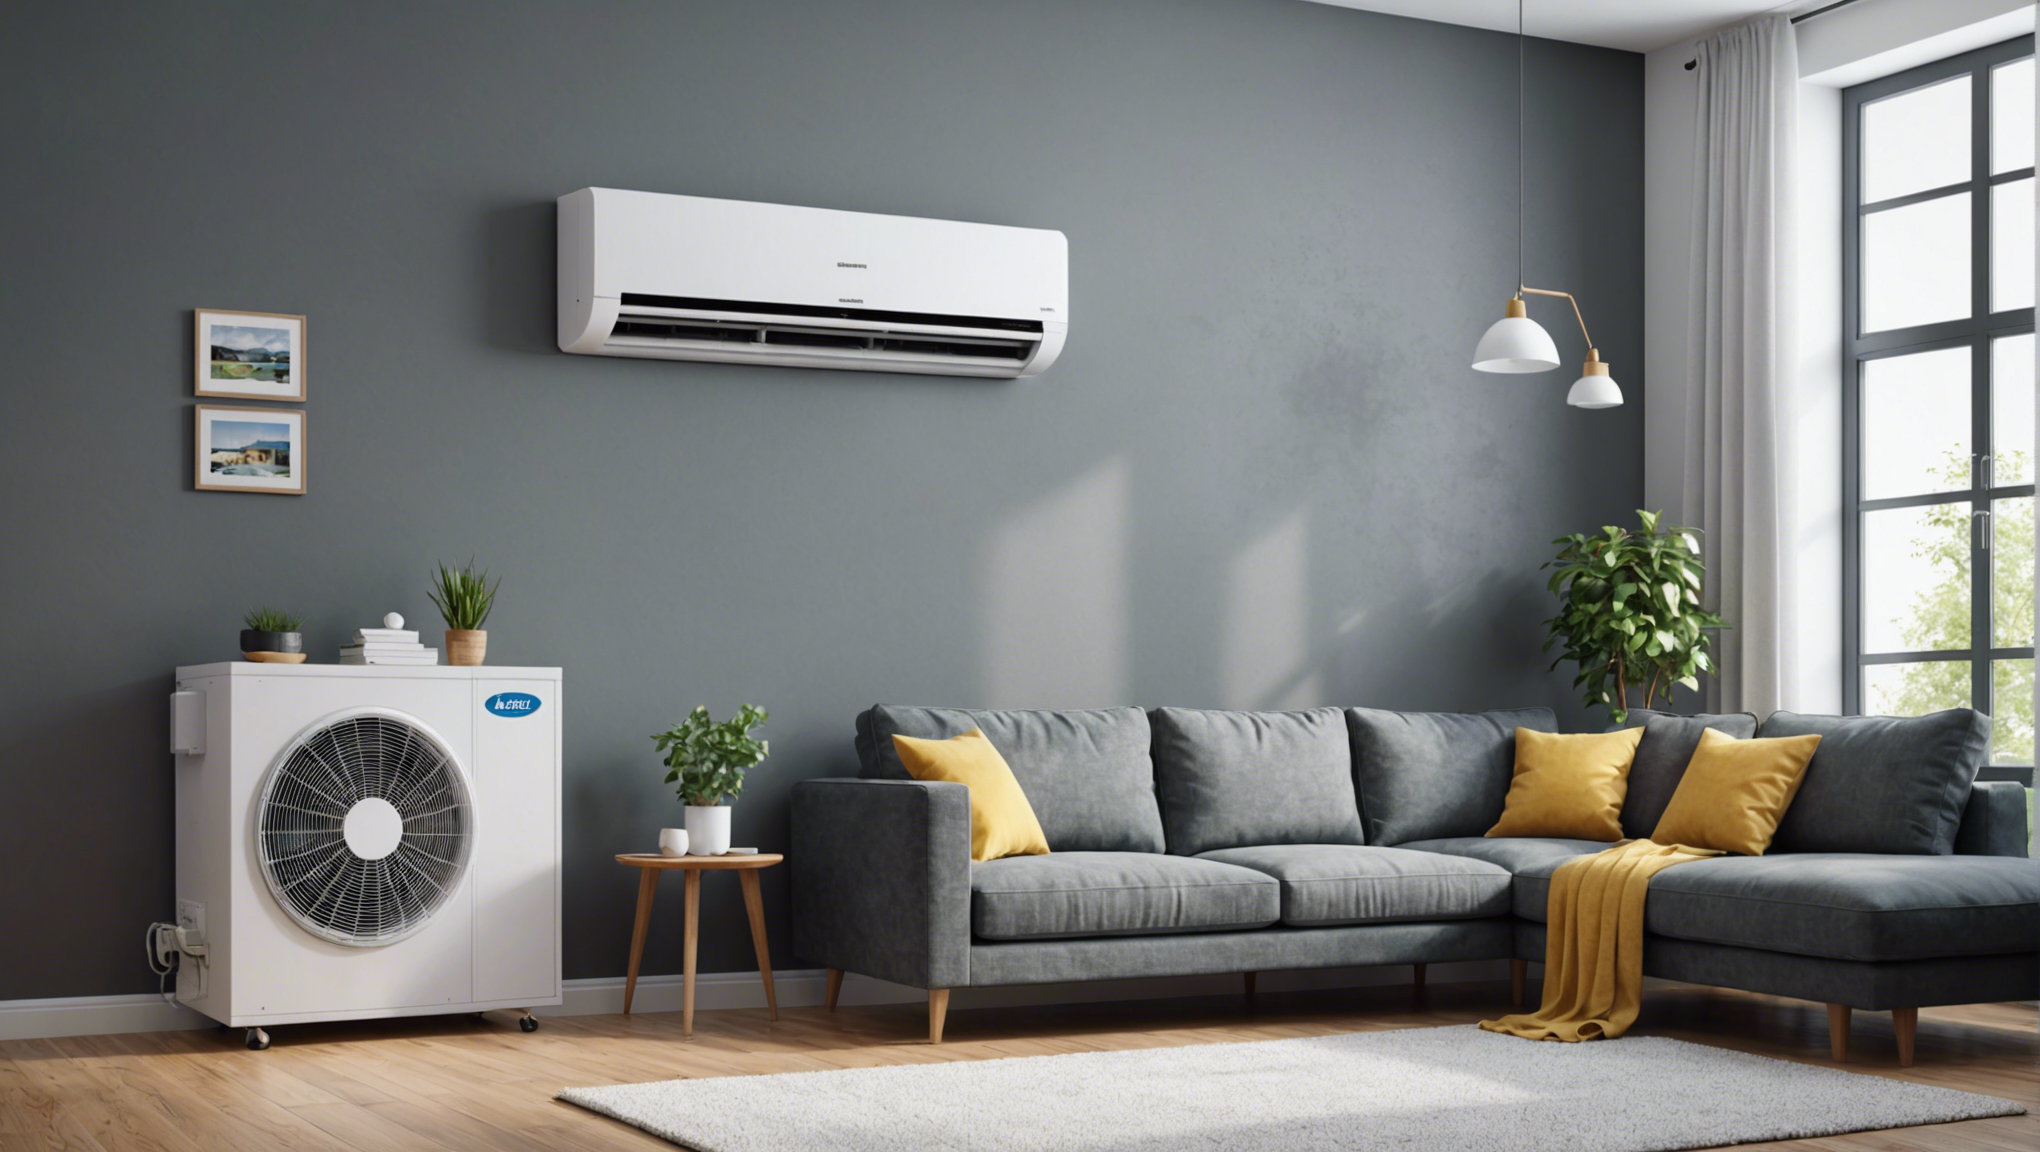 découvrez les avantages de la climatisation dans votre maison et apprenez pourquoi elle est essentielle pour votre confort quotidien. optez pour la climatisation et profitez d'une atmosphère agréable toute l'année.